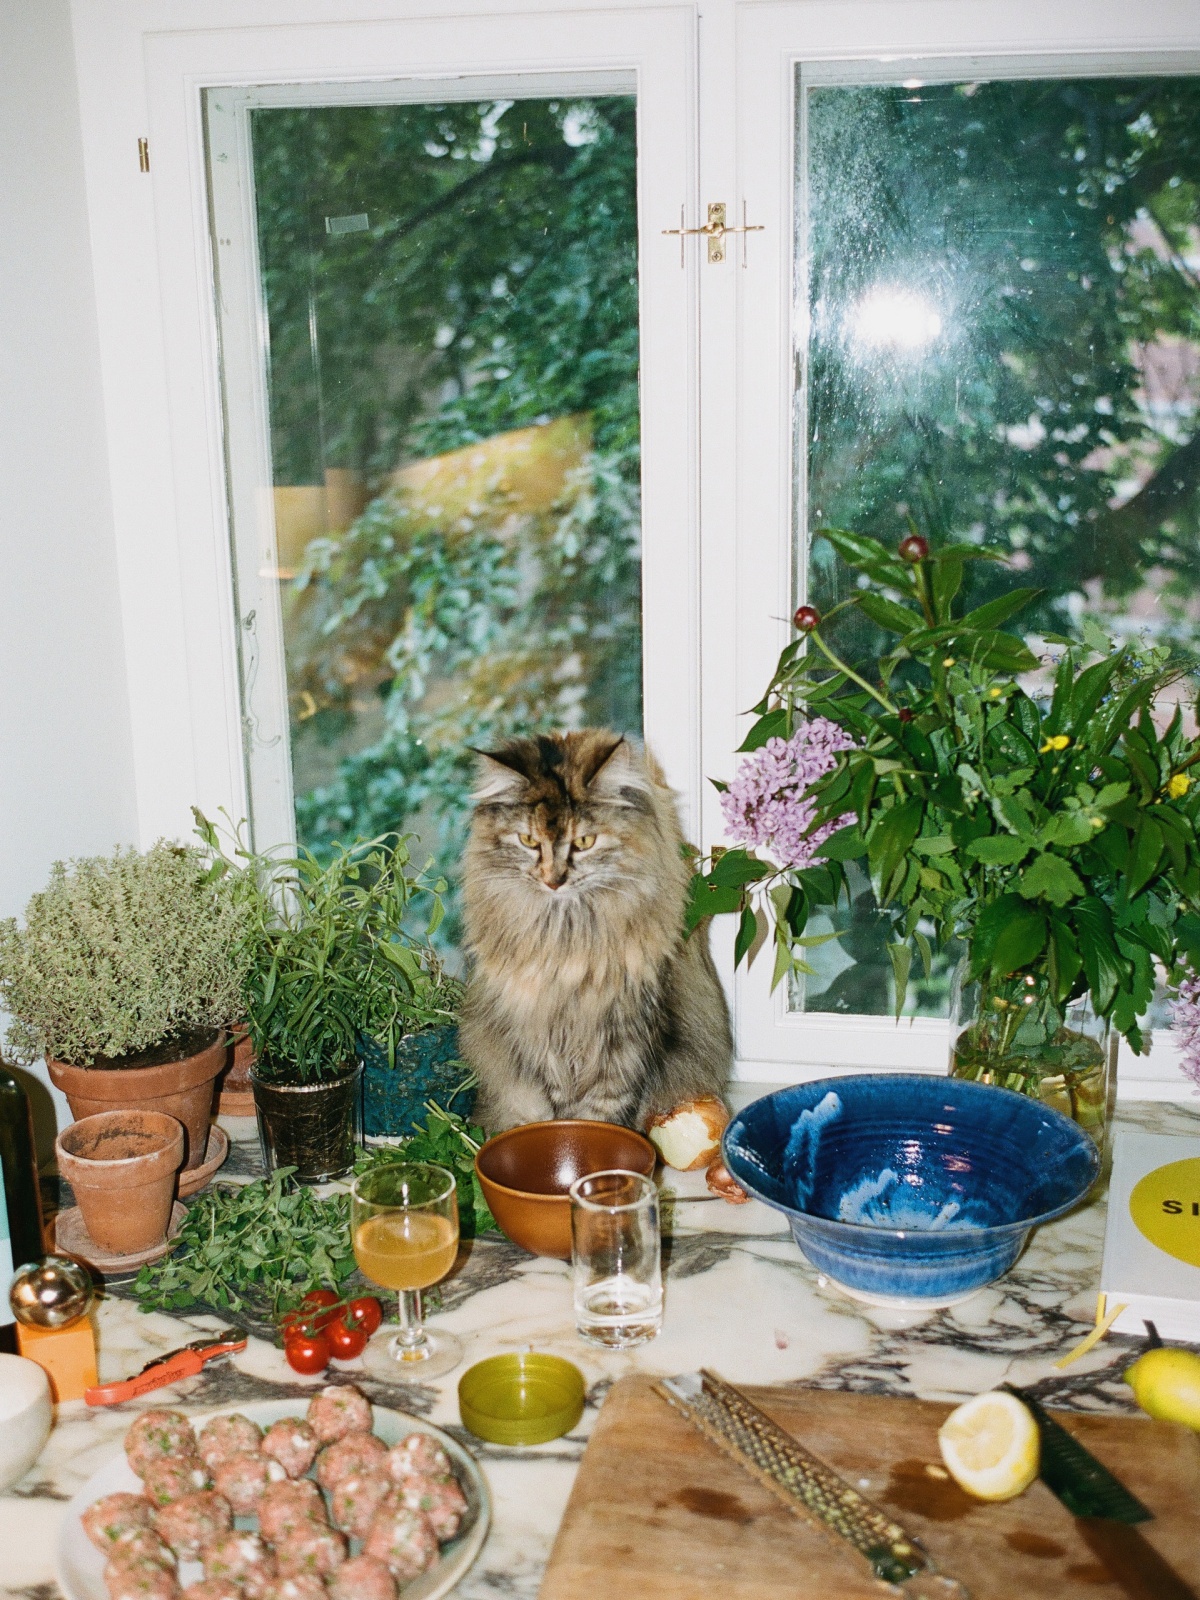 Cat in kitchen window